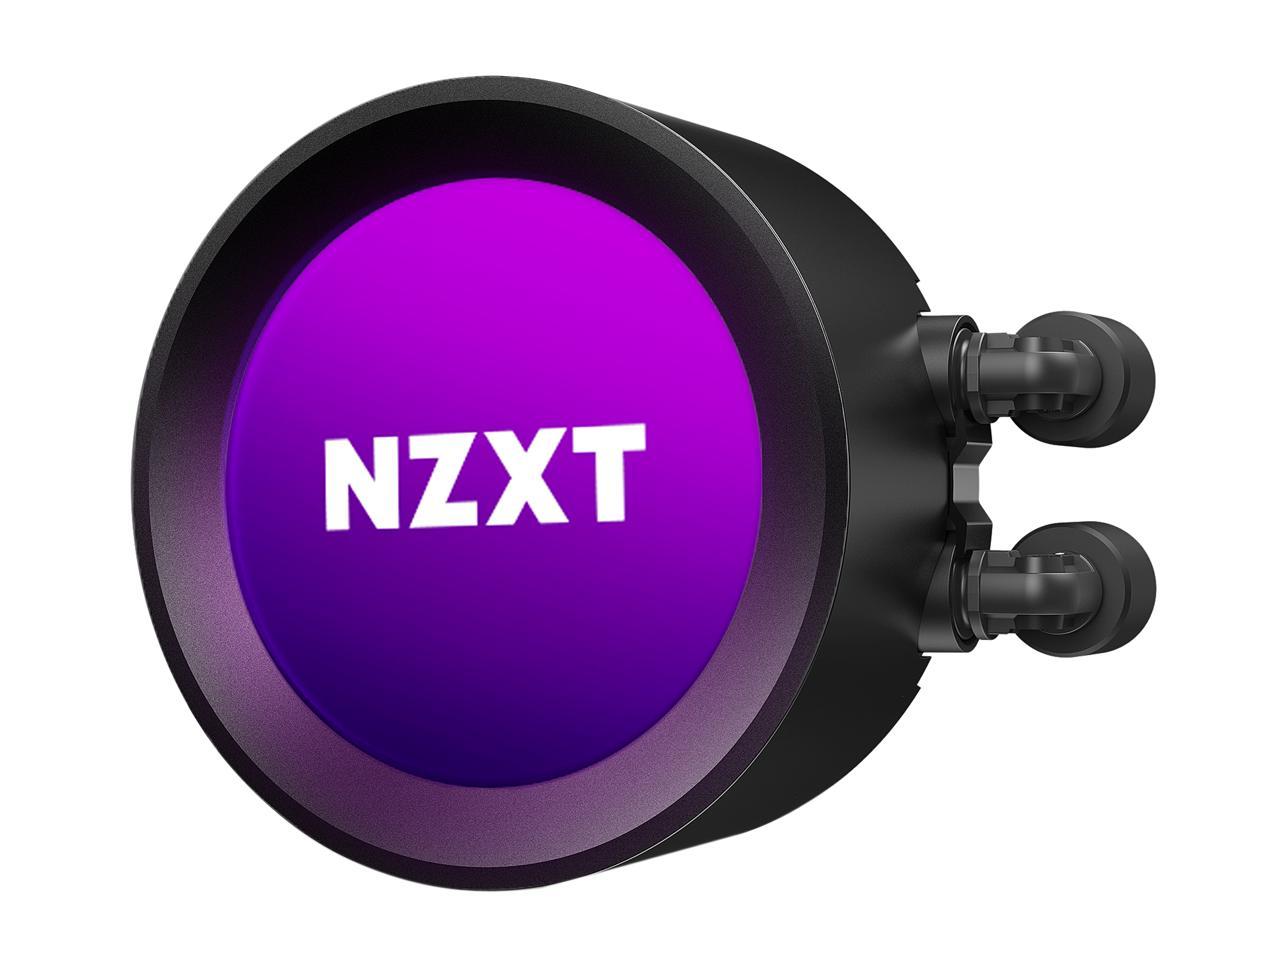 Nzxt Kraken Z Series Z73 360Mm - Rl-Krz73-01 - Aio Rgb Cpu Liquid Cooler - Customizable Lcd